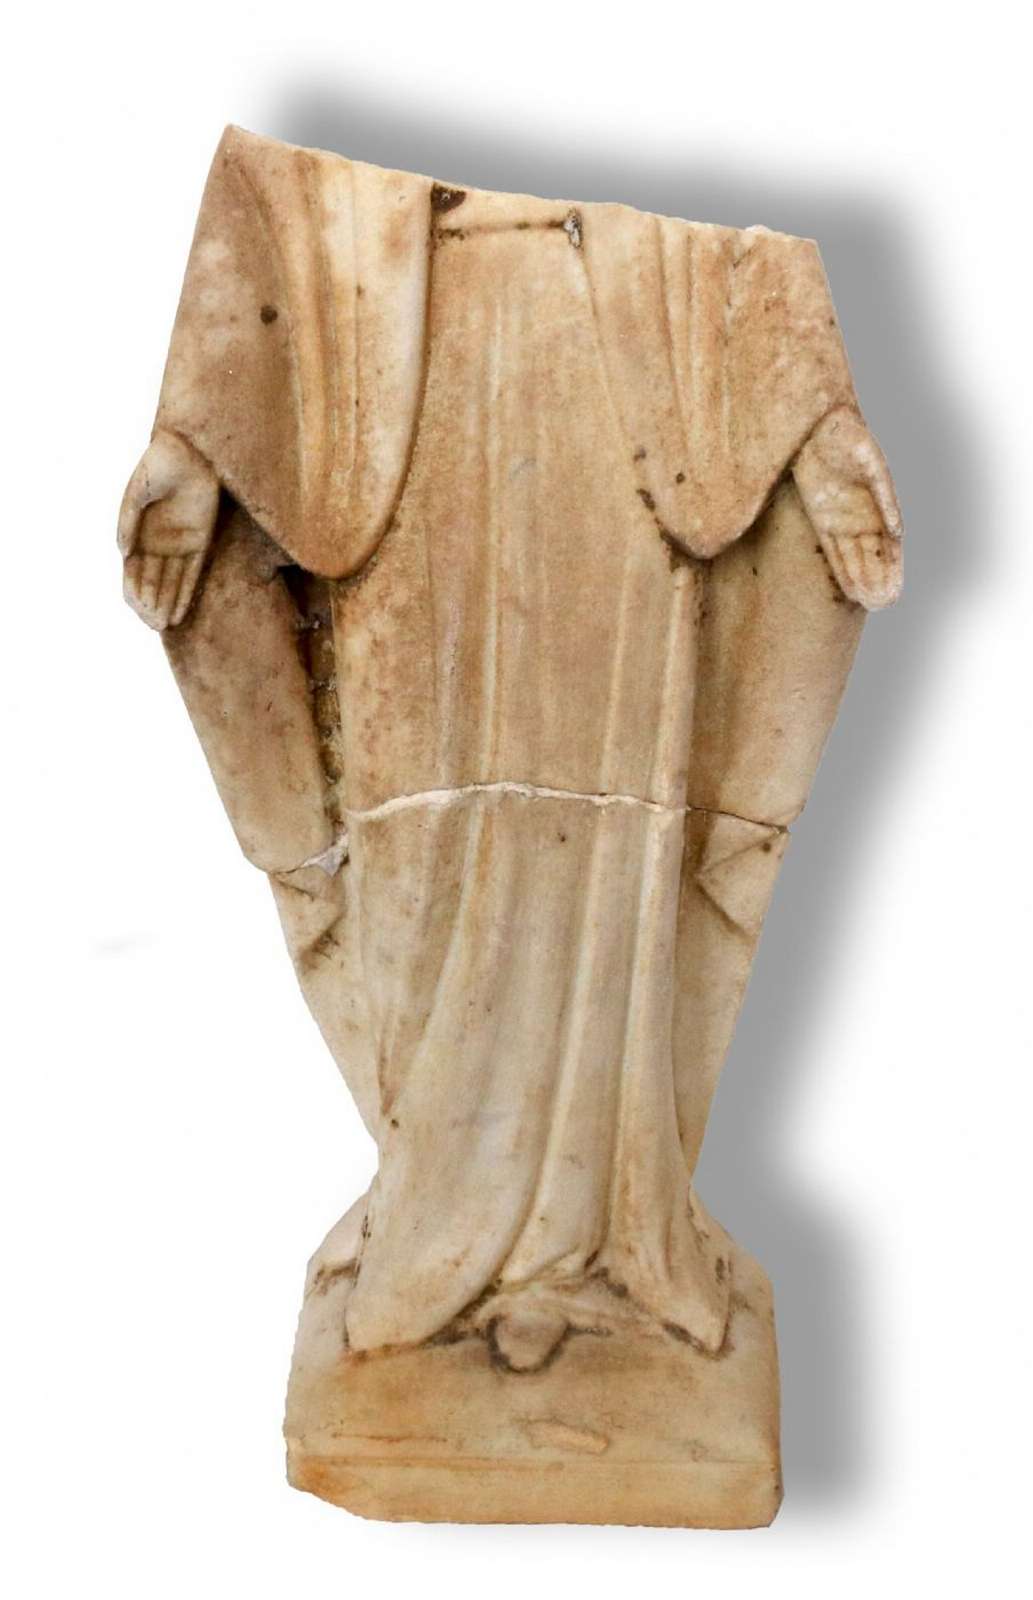 Antico frammento di scultura in marmo. Epoca 1800. - Statue Antiche - Sculture Antiche - Prodotti - Antichità Fiorillo